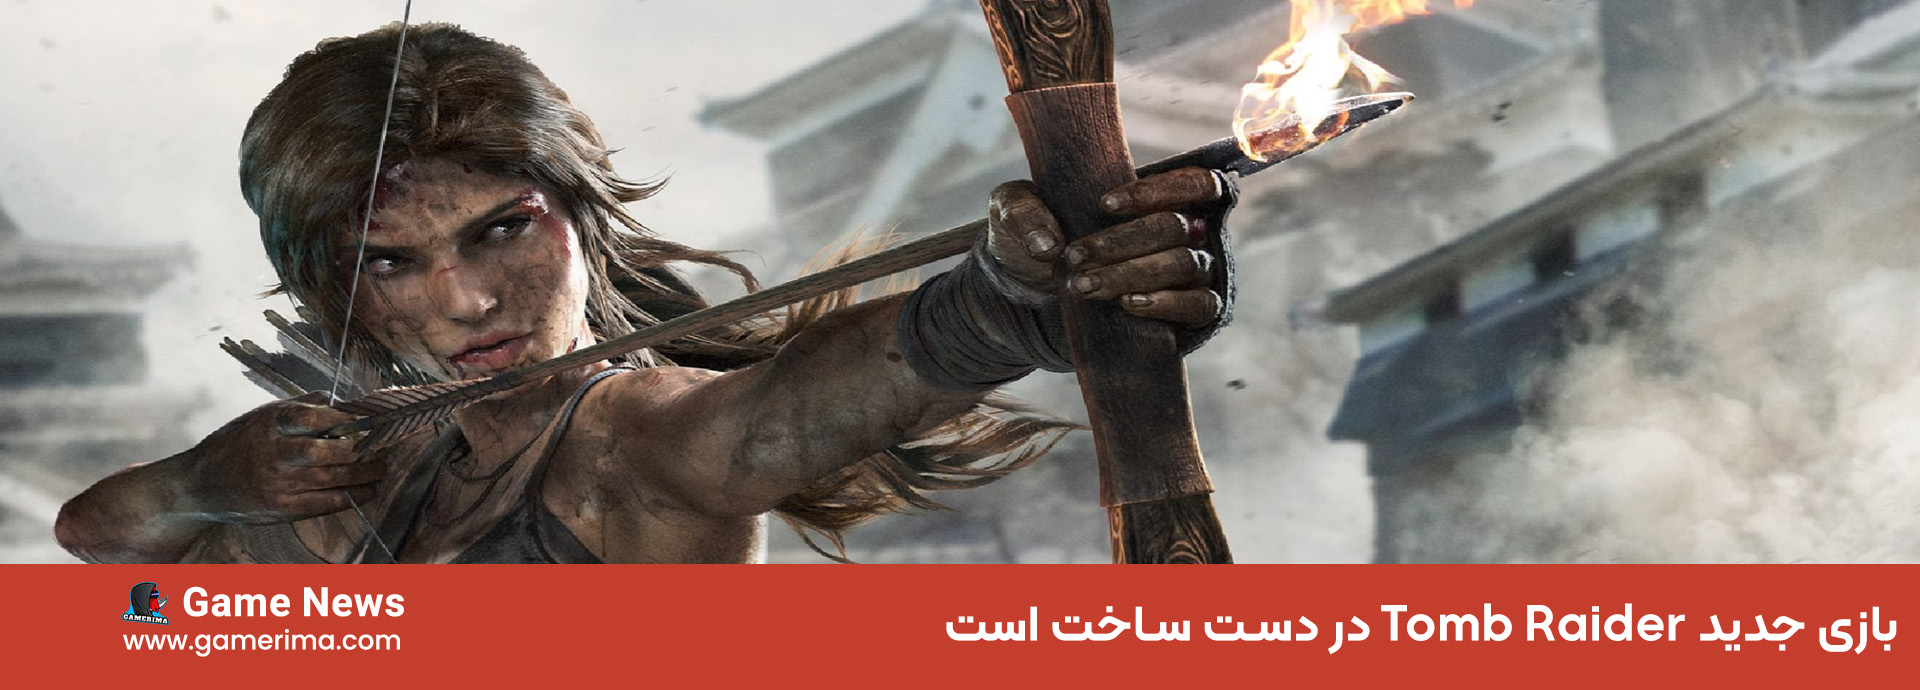 Tomb Raider New Game